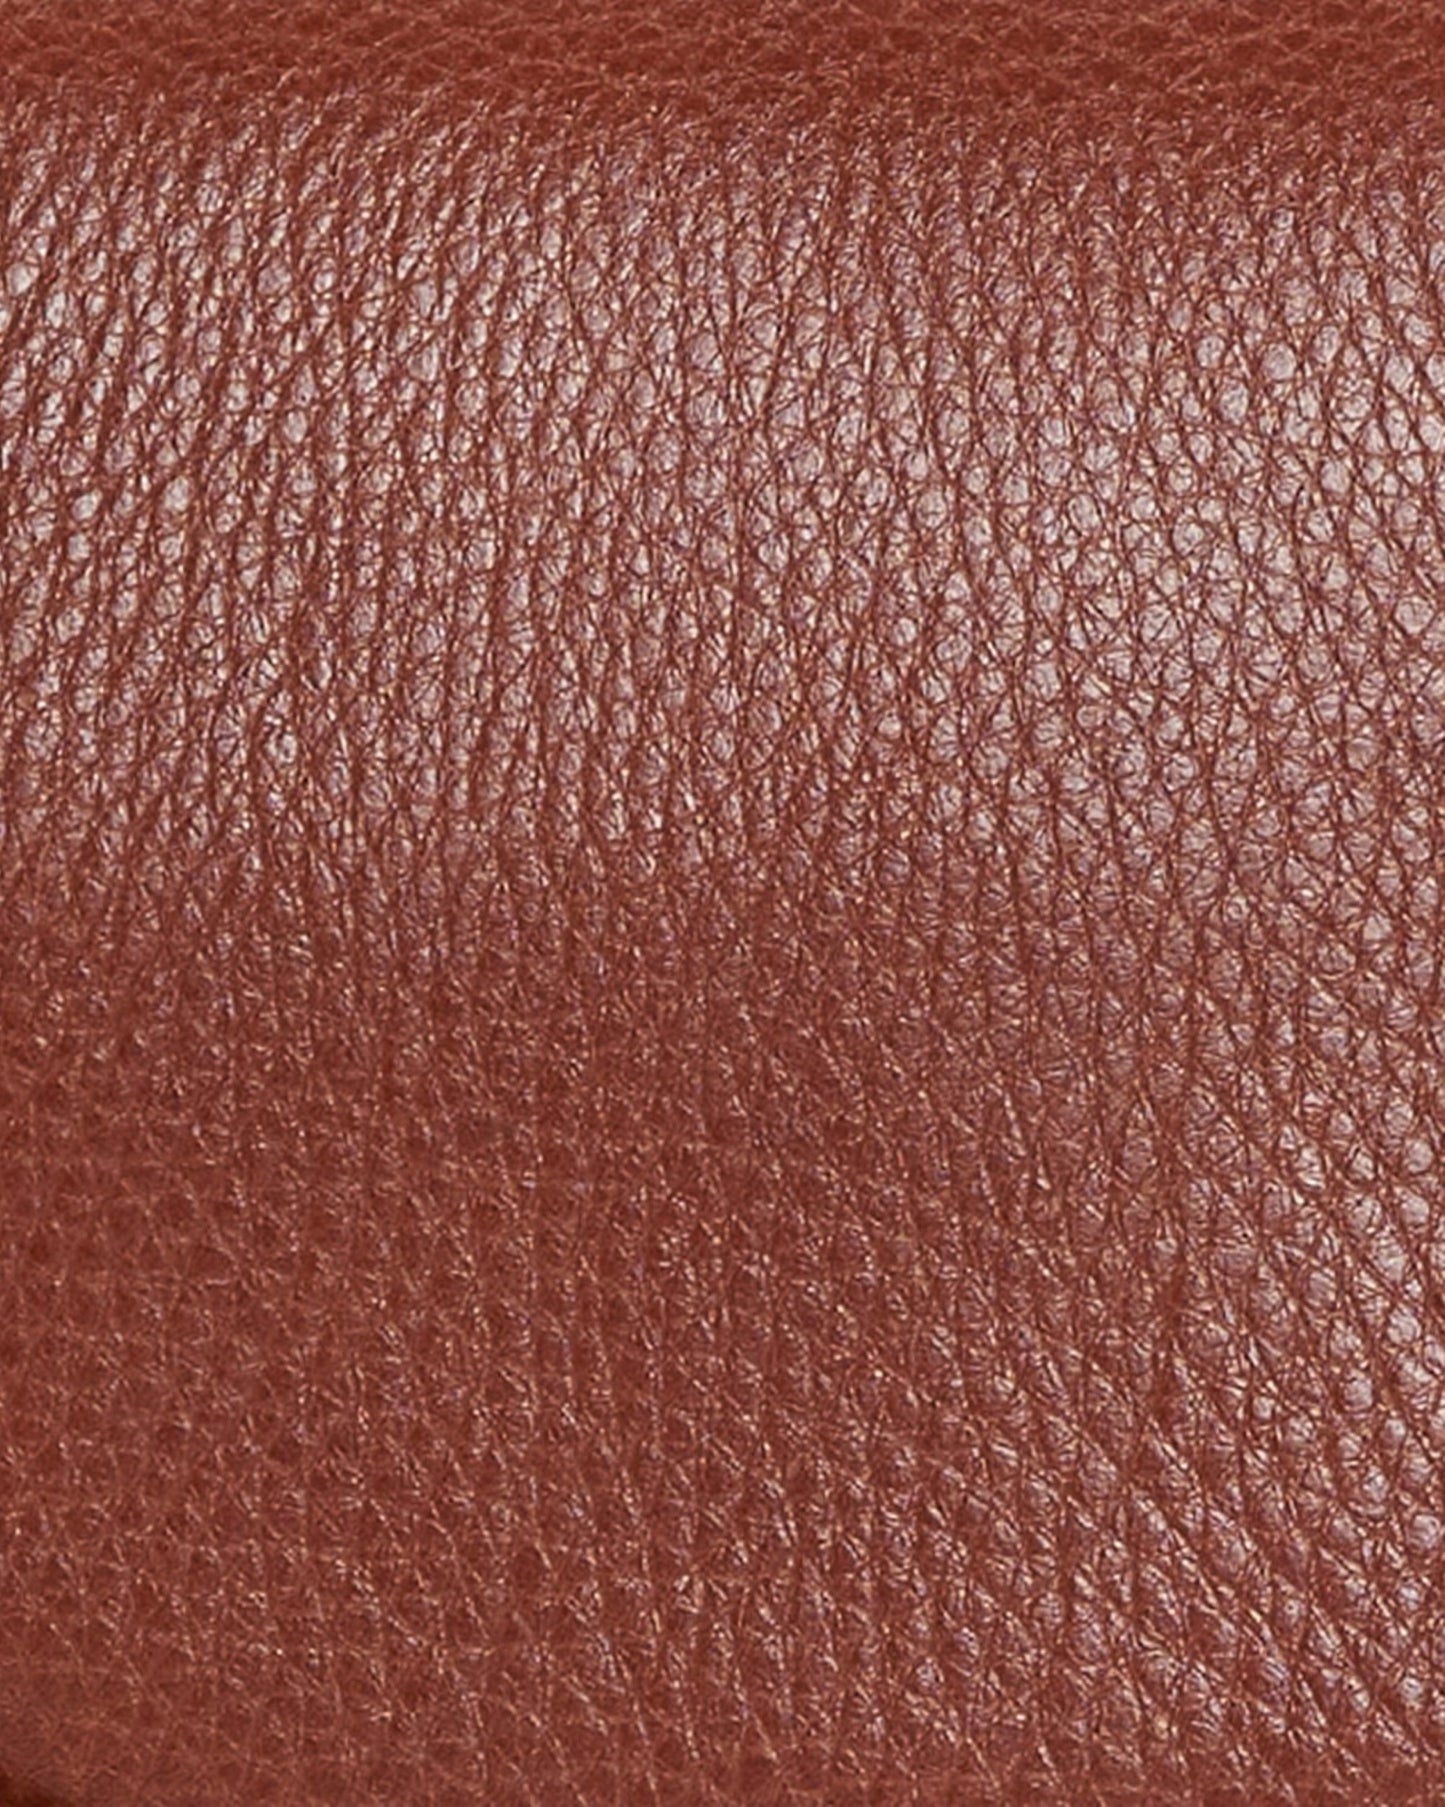 Isla Leather Cross Body Bag